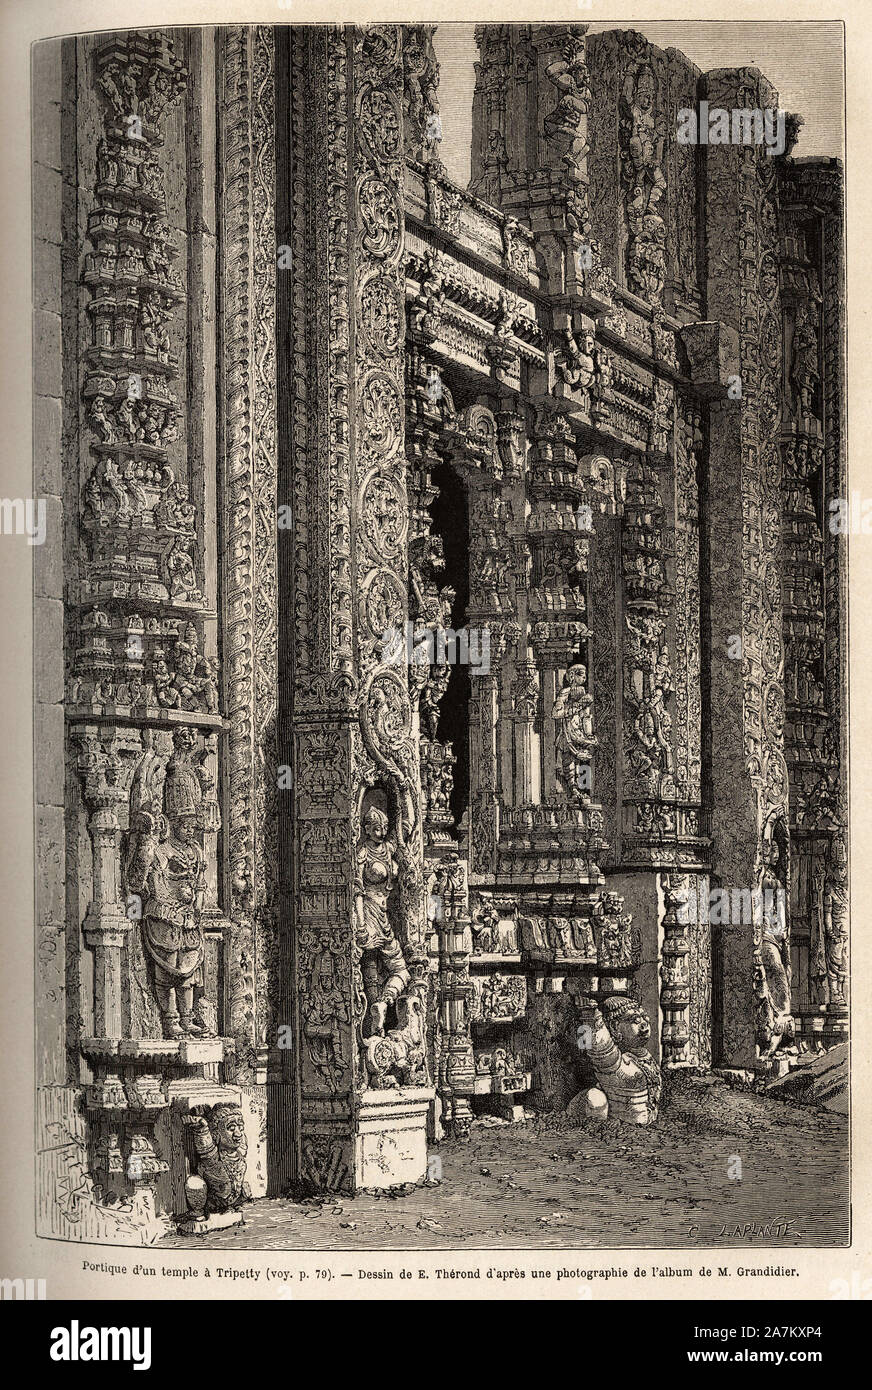 Le portique sculpte d'Onu un tempio Tripetty ( ou Tirupati, dans l'Andhra Pradesh), ONU importante lieu de pelerinage hindou .Gravure pour illustrer le vo Foto Stock